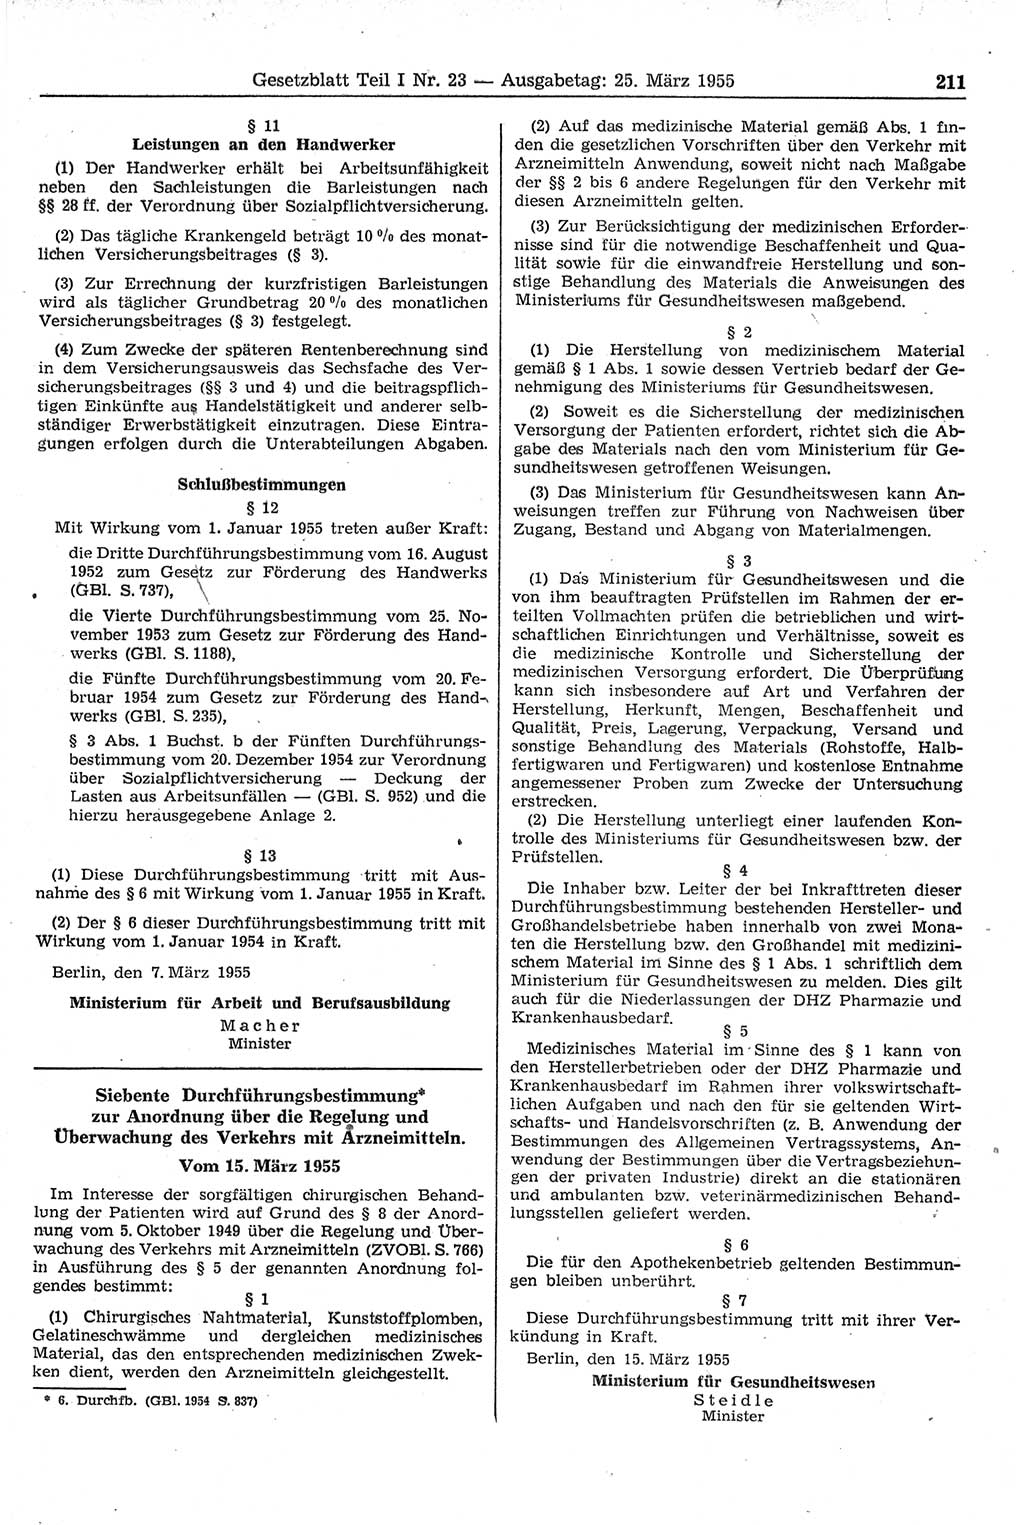 Gesetzblatt (GBl.) der Deutschen Demokratischen Republik (DDR) Teil Ⅰ 1955, Seite 211 (GBl. DDR Ⅰ 1955, S. 211)